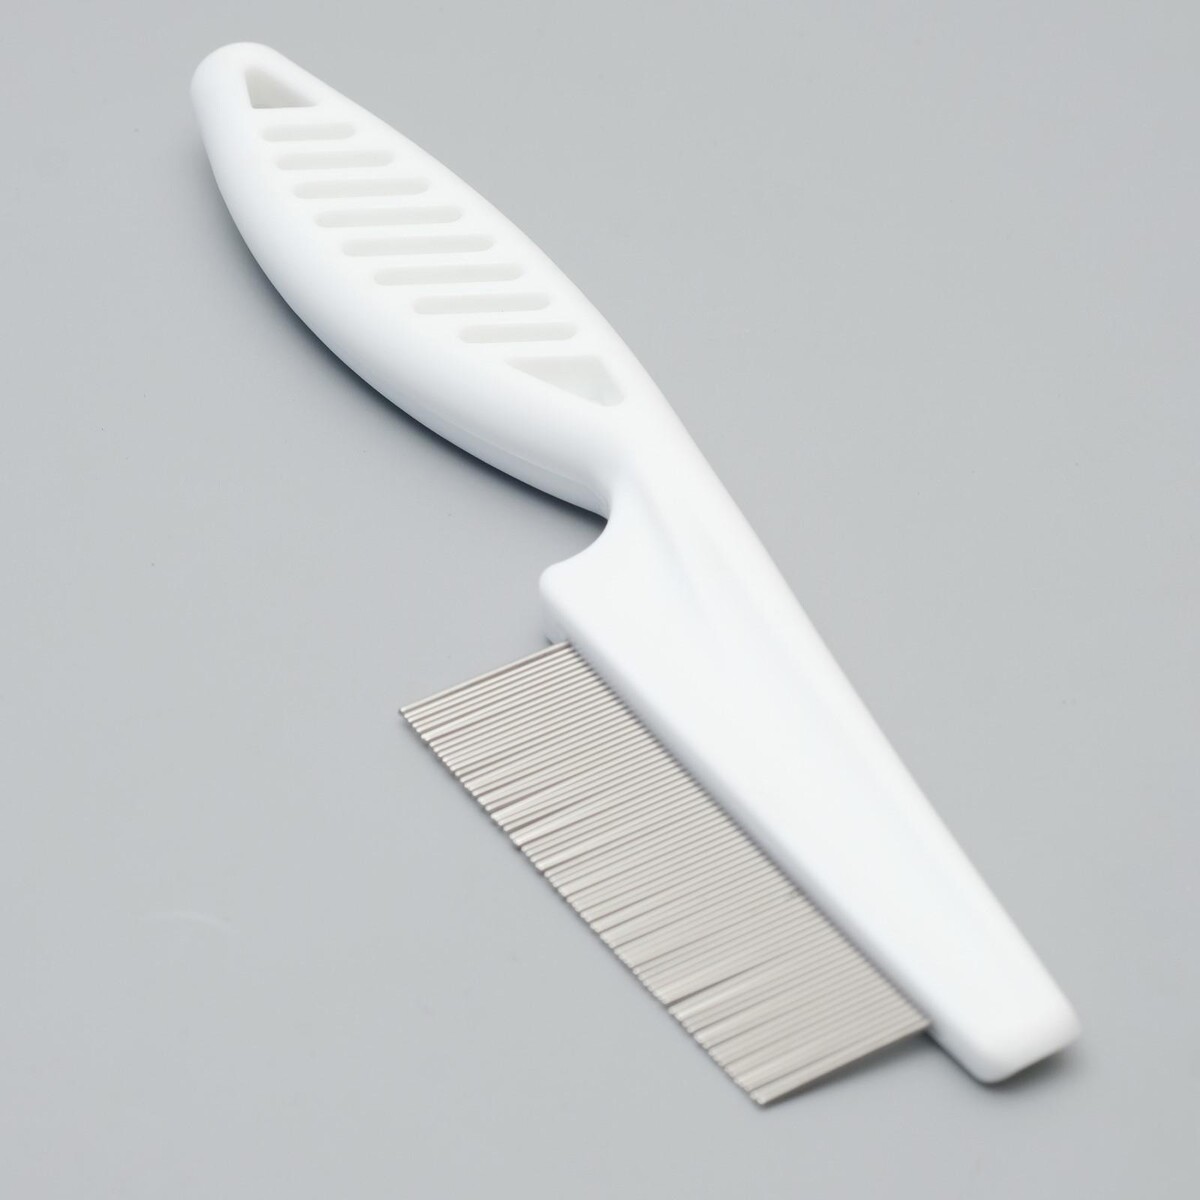 Расческа с частыми зубьями, 18 см, пластиковая ручка, белая расческа с частыми зубьями 18 см пластиковая ручка белая